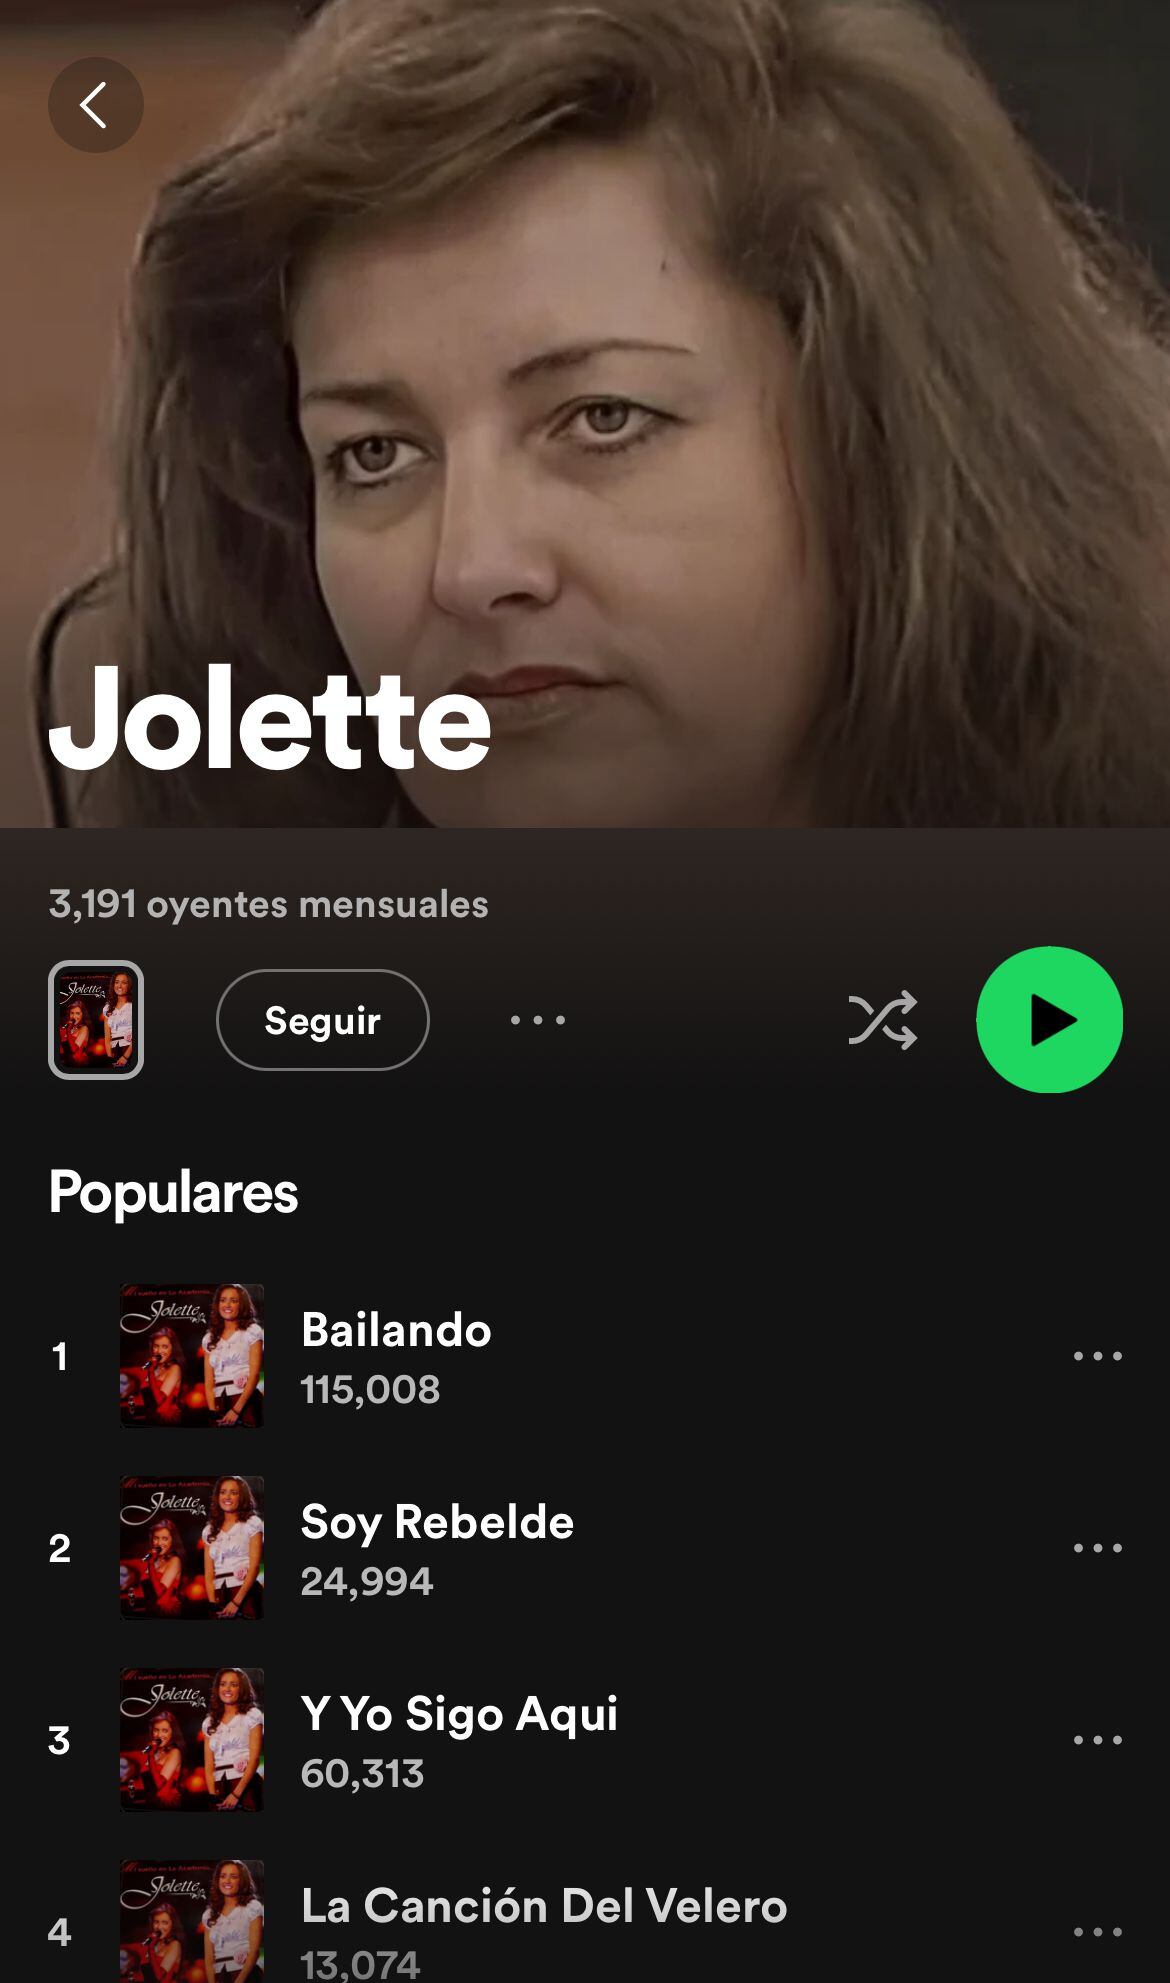 ¿Que ha pasado con la cuenta de Spotify de Jolette?